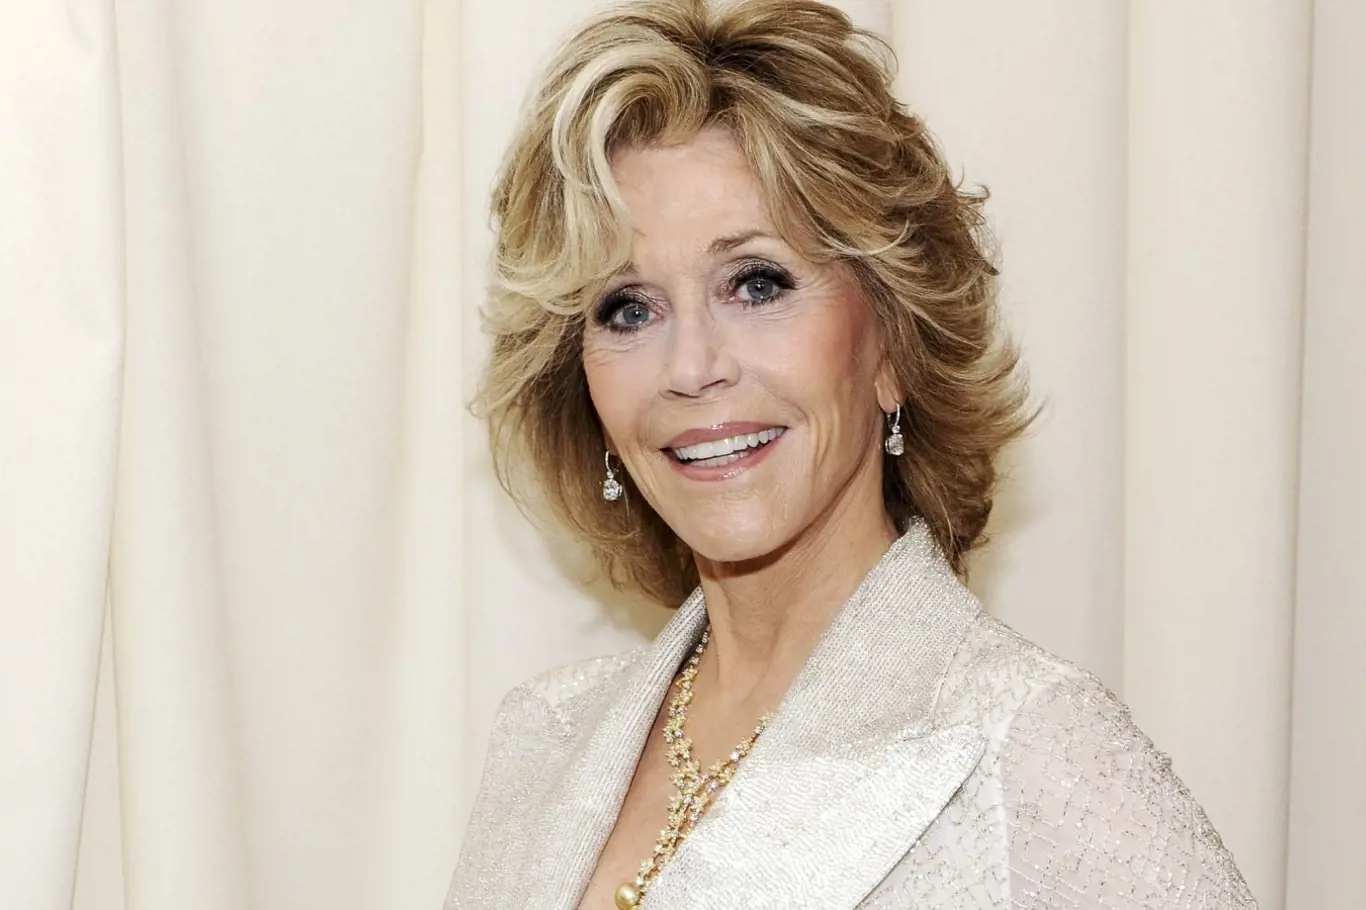 Milovnice cvičení Jane Fonda už si připadá stará.